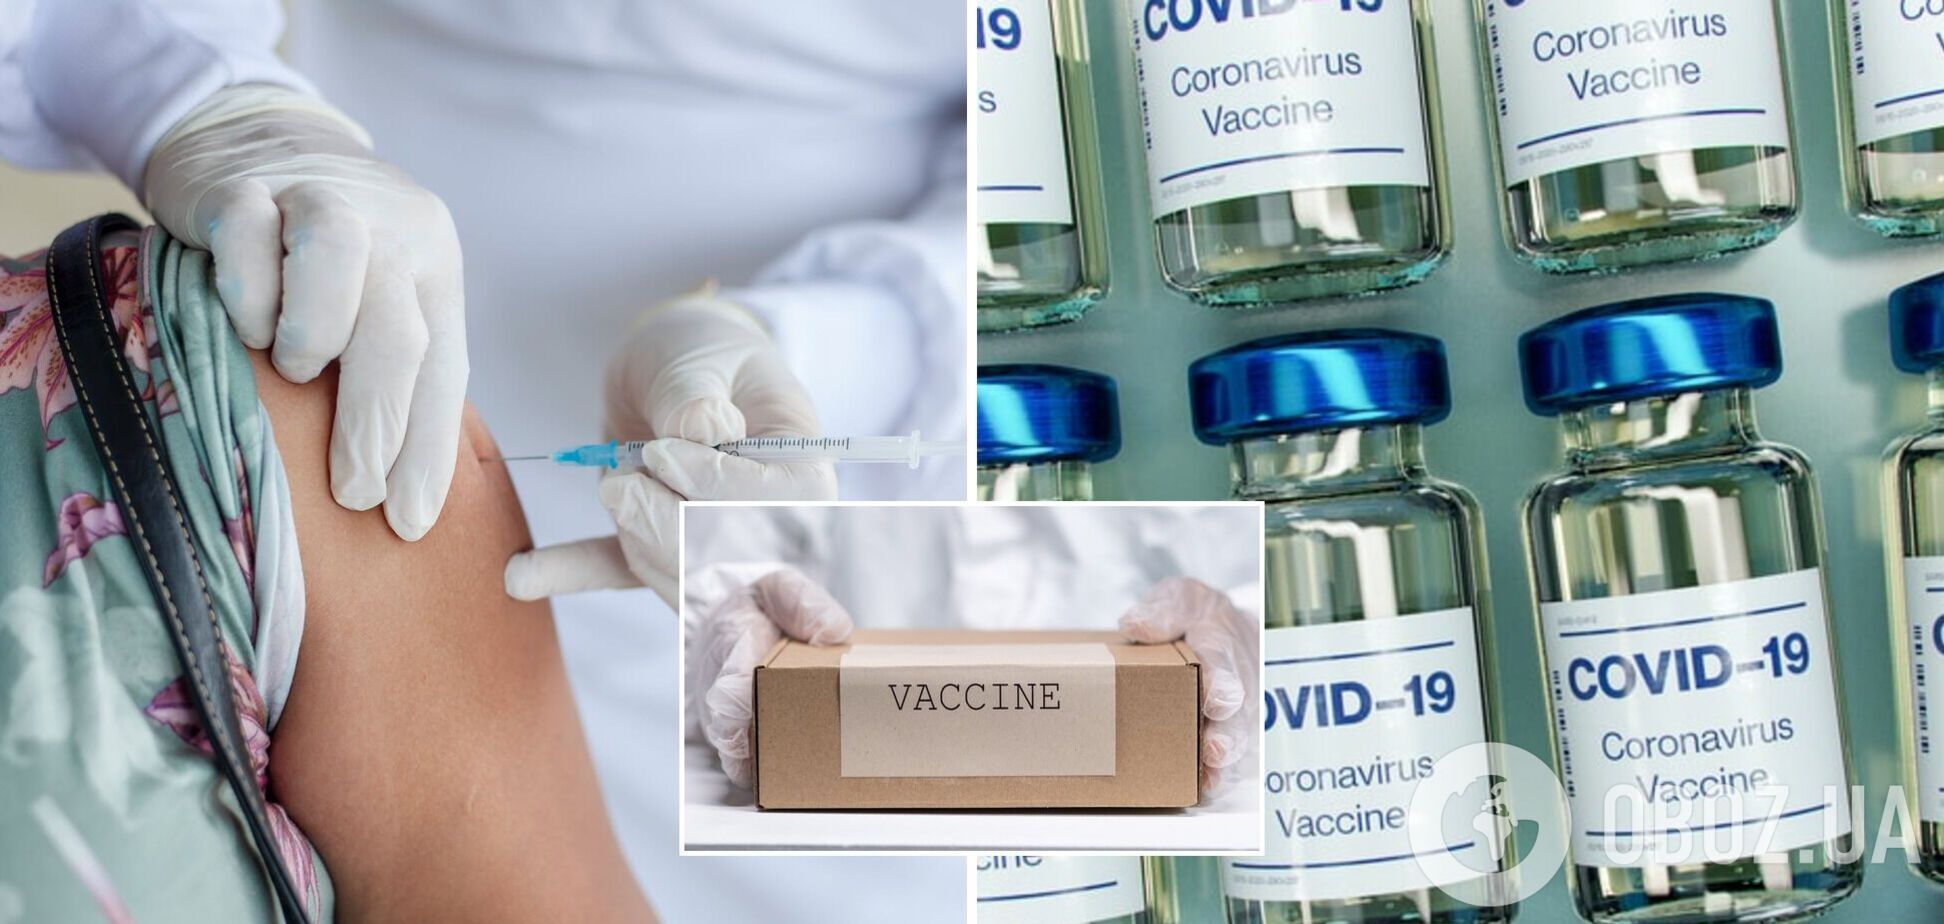 В Україні випробовуватимуть вакцину з ефективністю 95%: що про неї відомо і в чому особливість